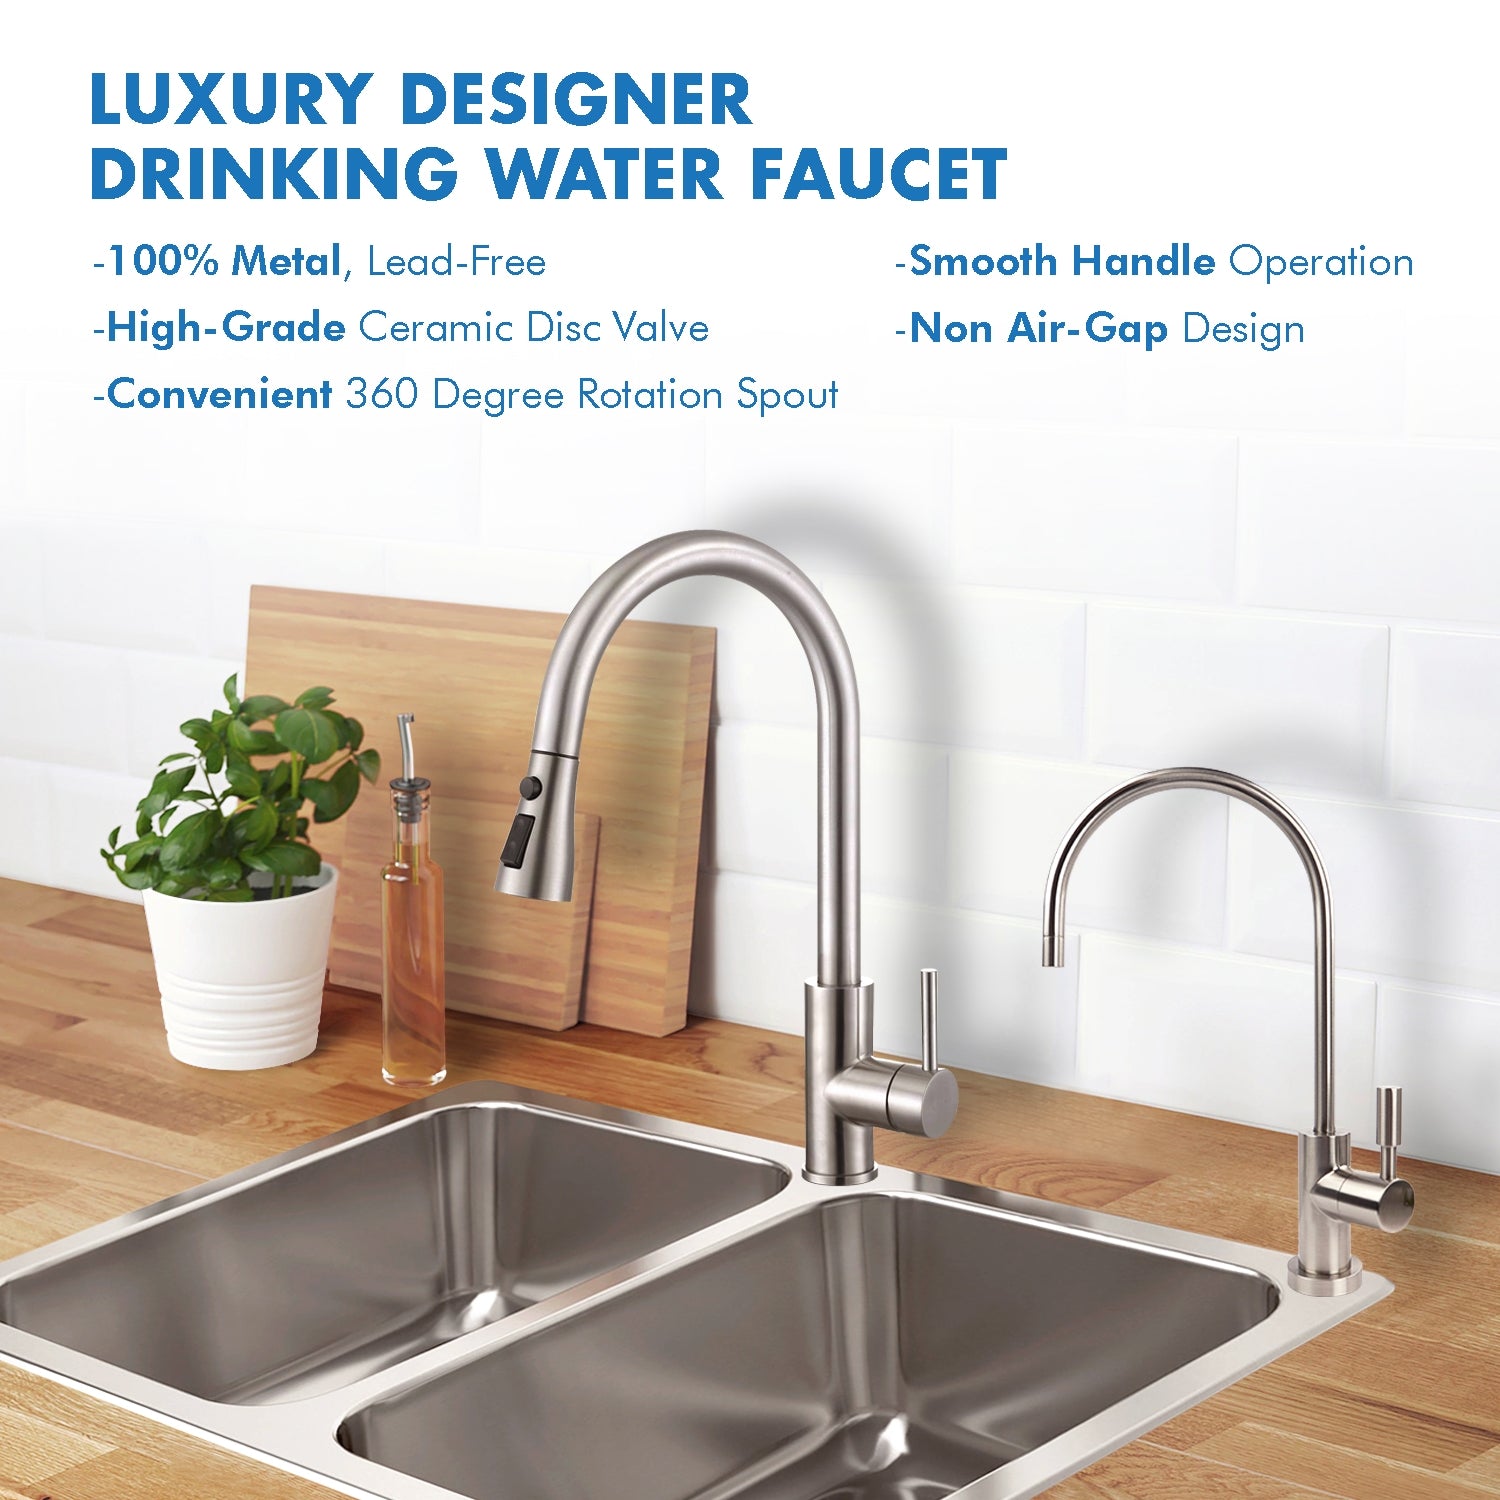 APEC Ceramic Disc Luxury Designer Reverse Osmosis Faucet - Brushed Nickel, Lead-Free